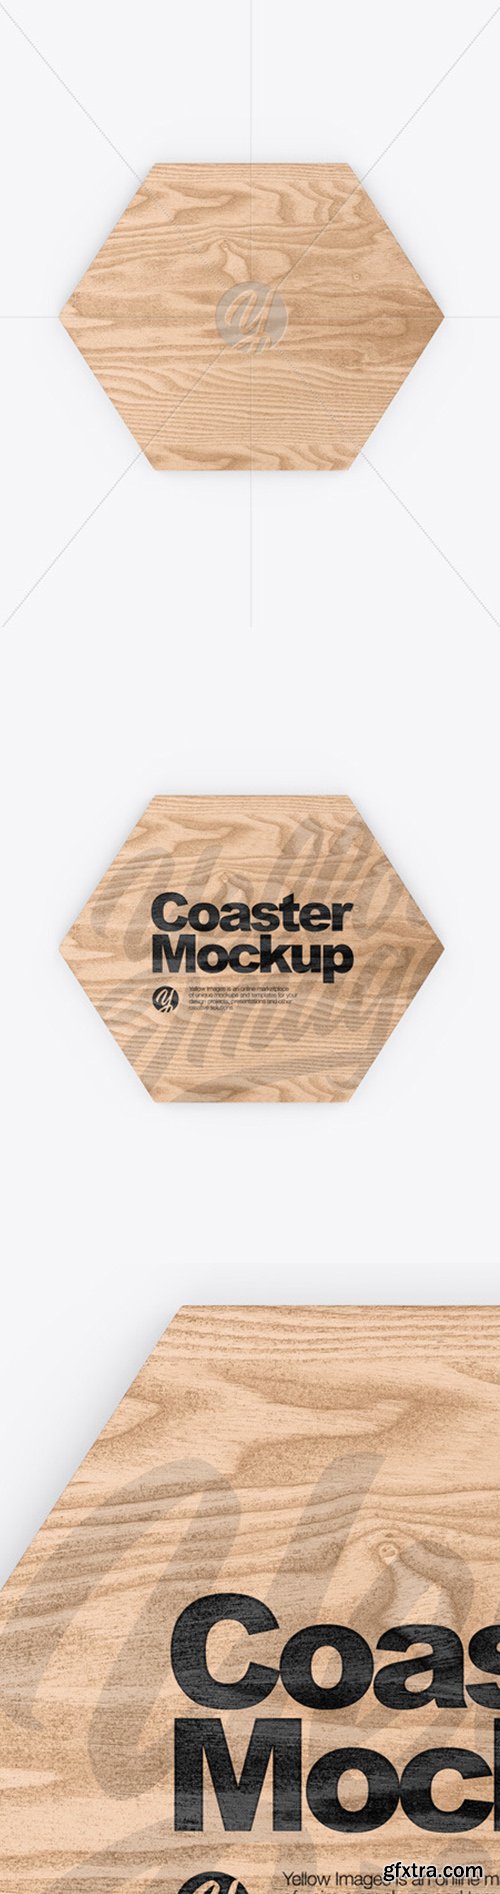 Wooden Beverage Coaster Mockup 52118